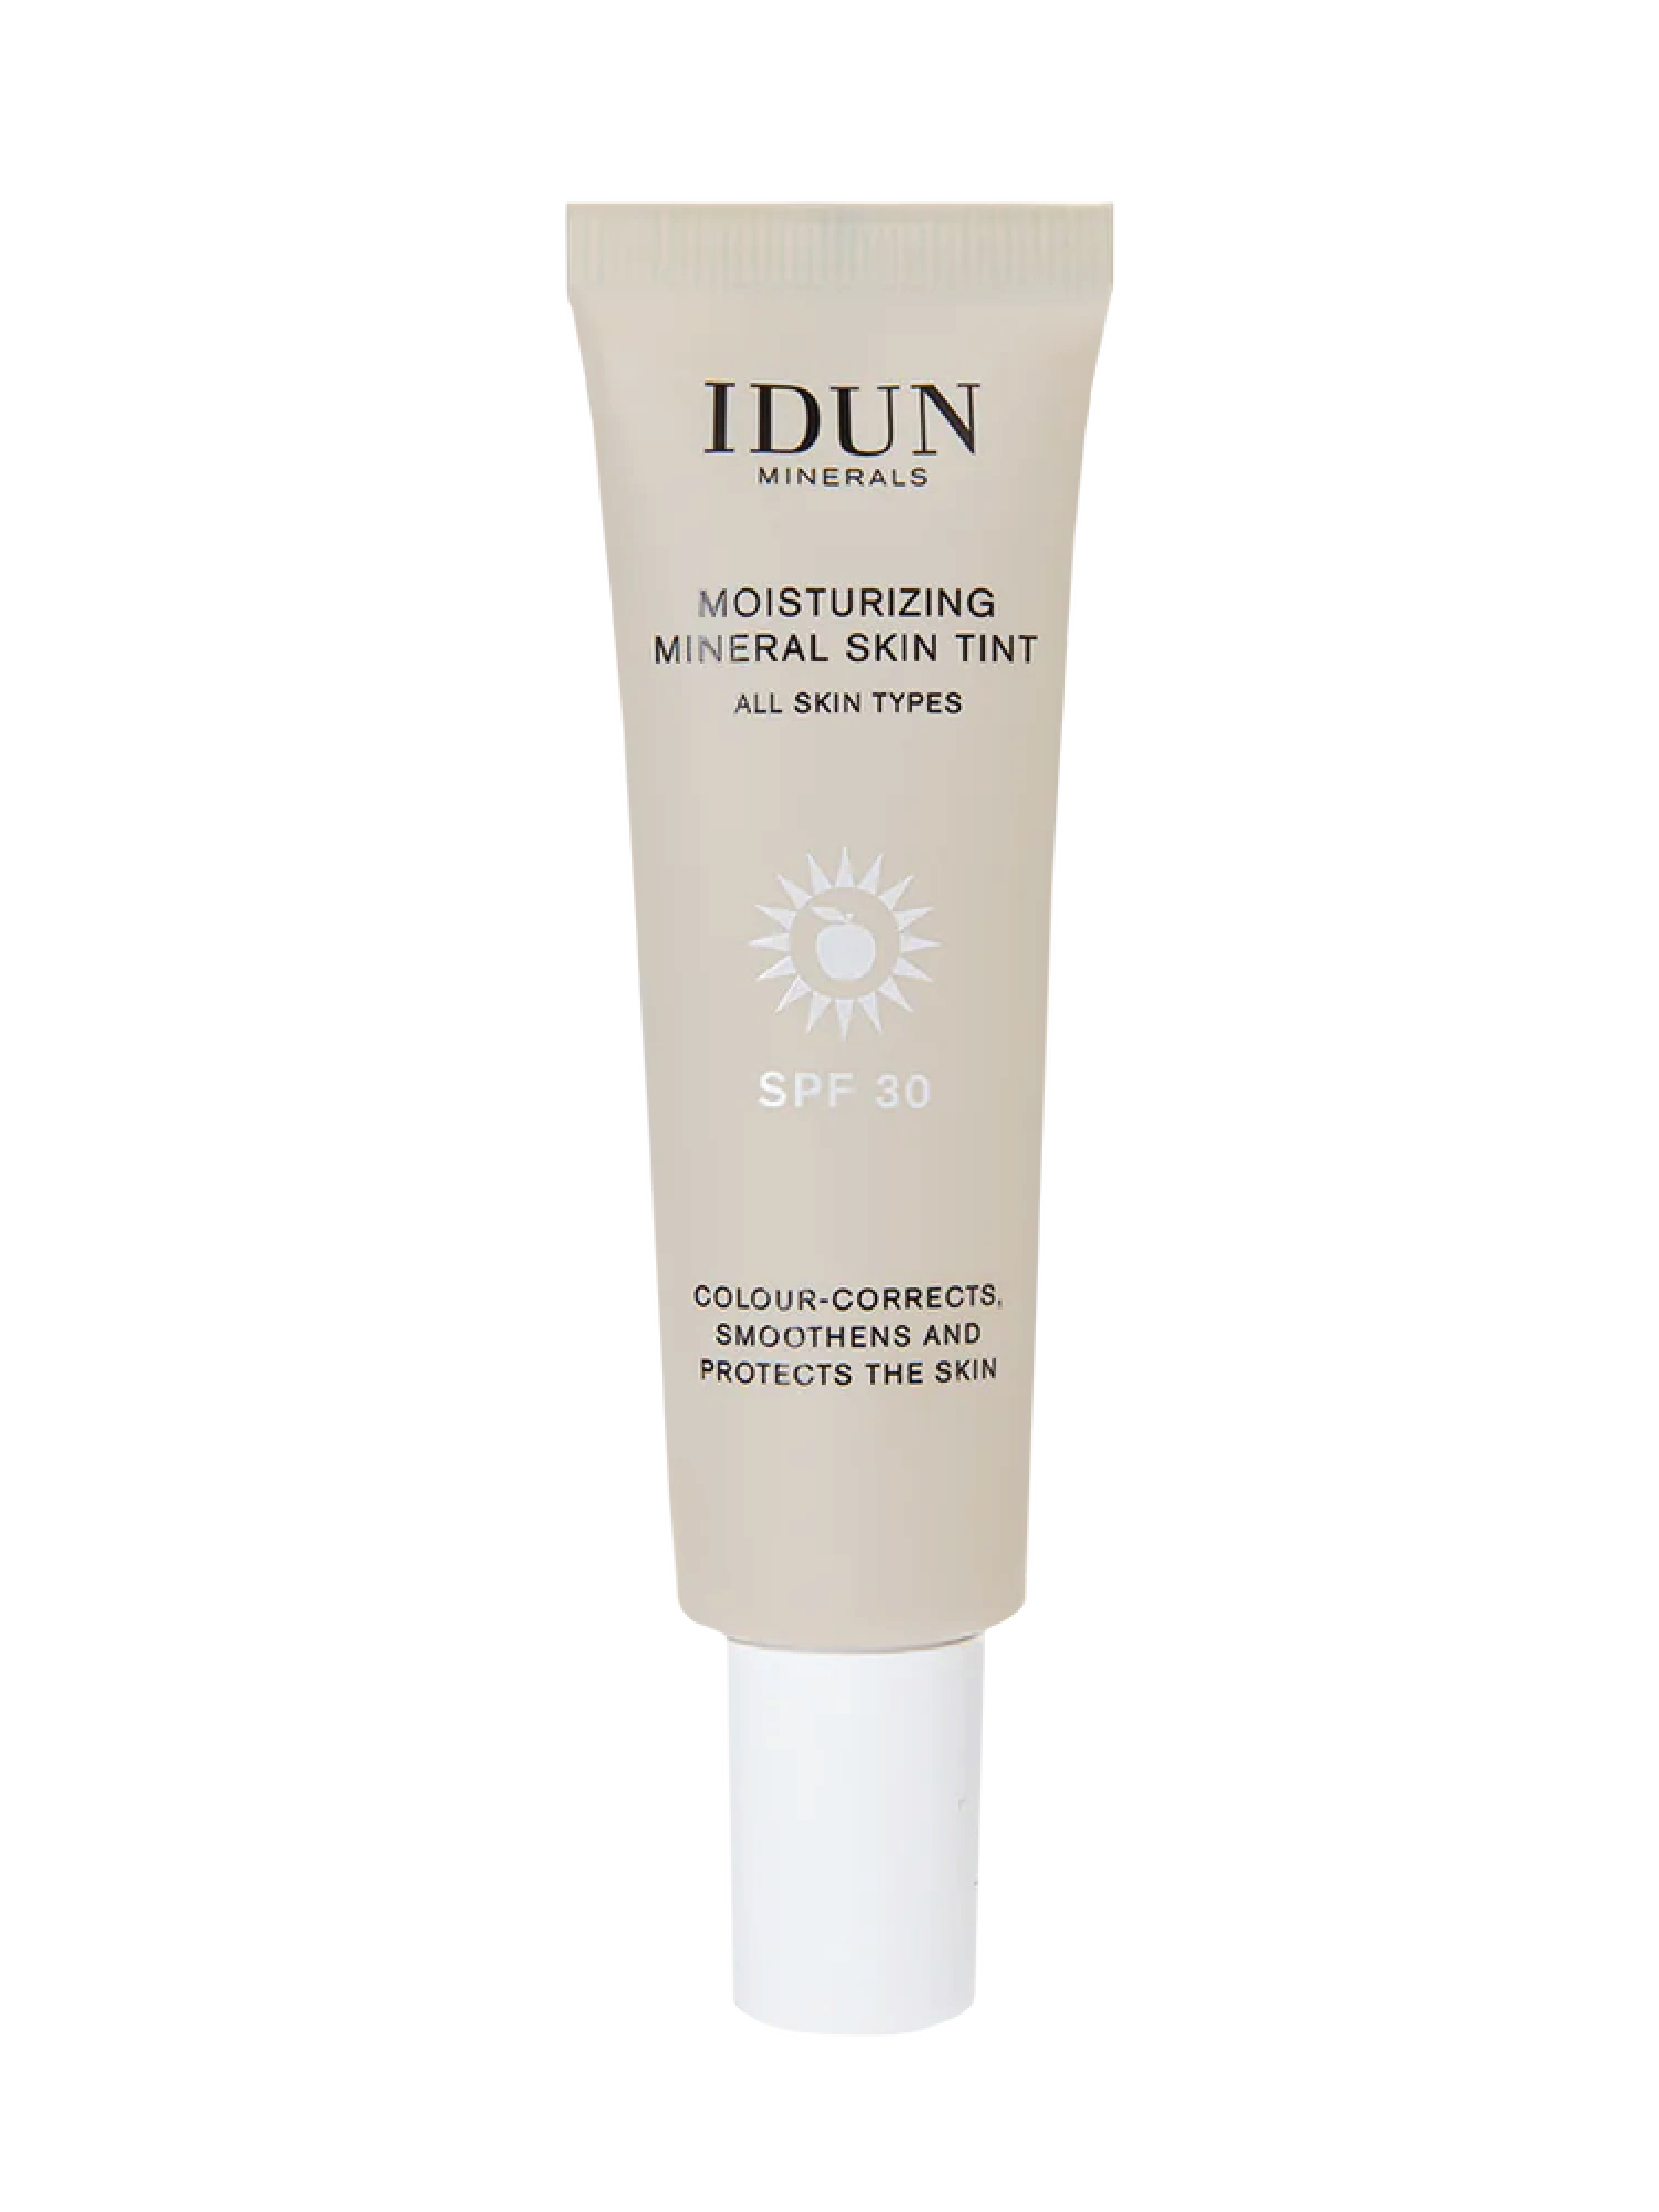 IDUN Minerals Moisturizing Mineral Skin Tint SPF 30, Medium, 27 ml